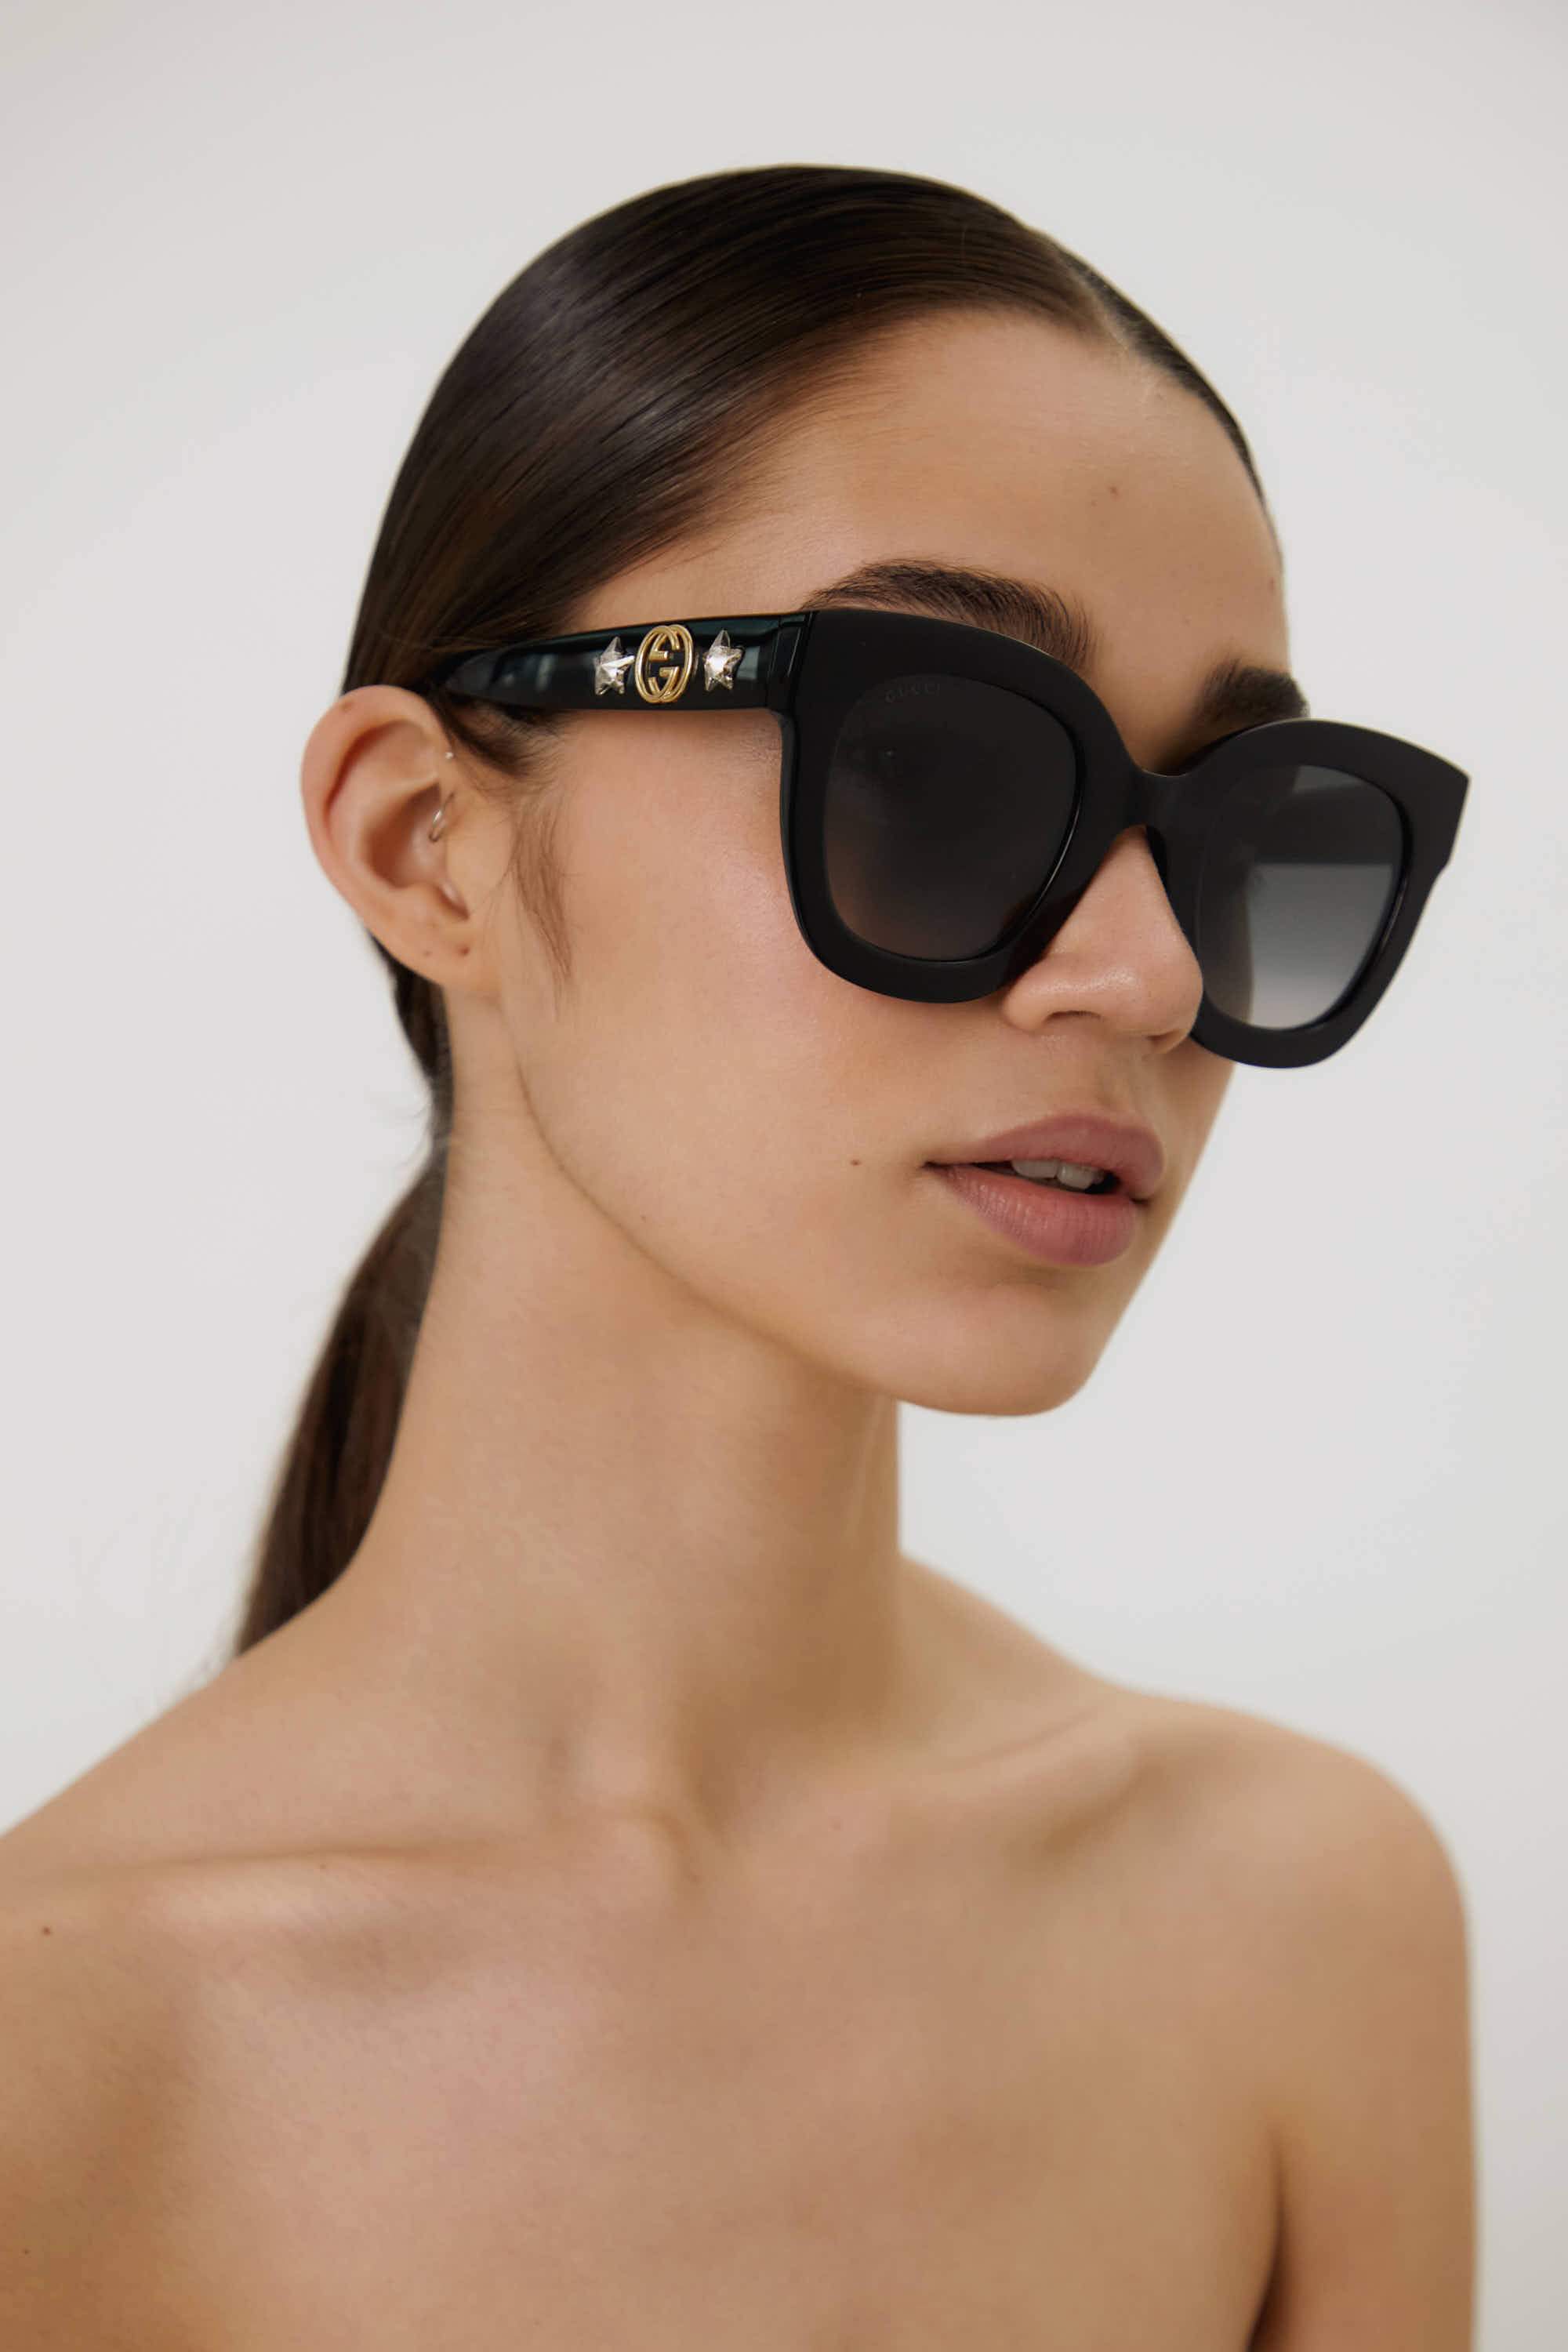 Gucci star sunglasses